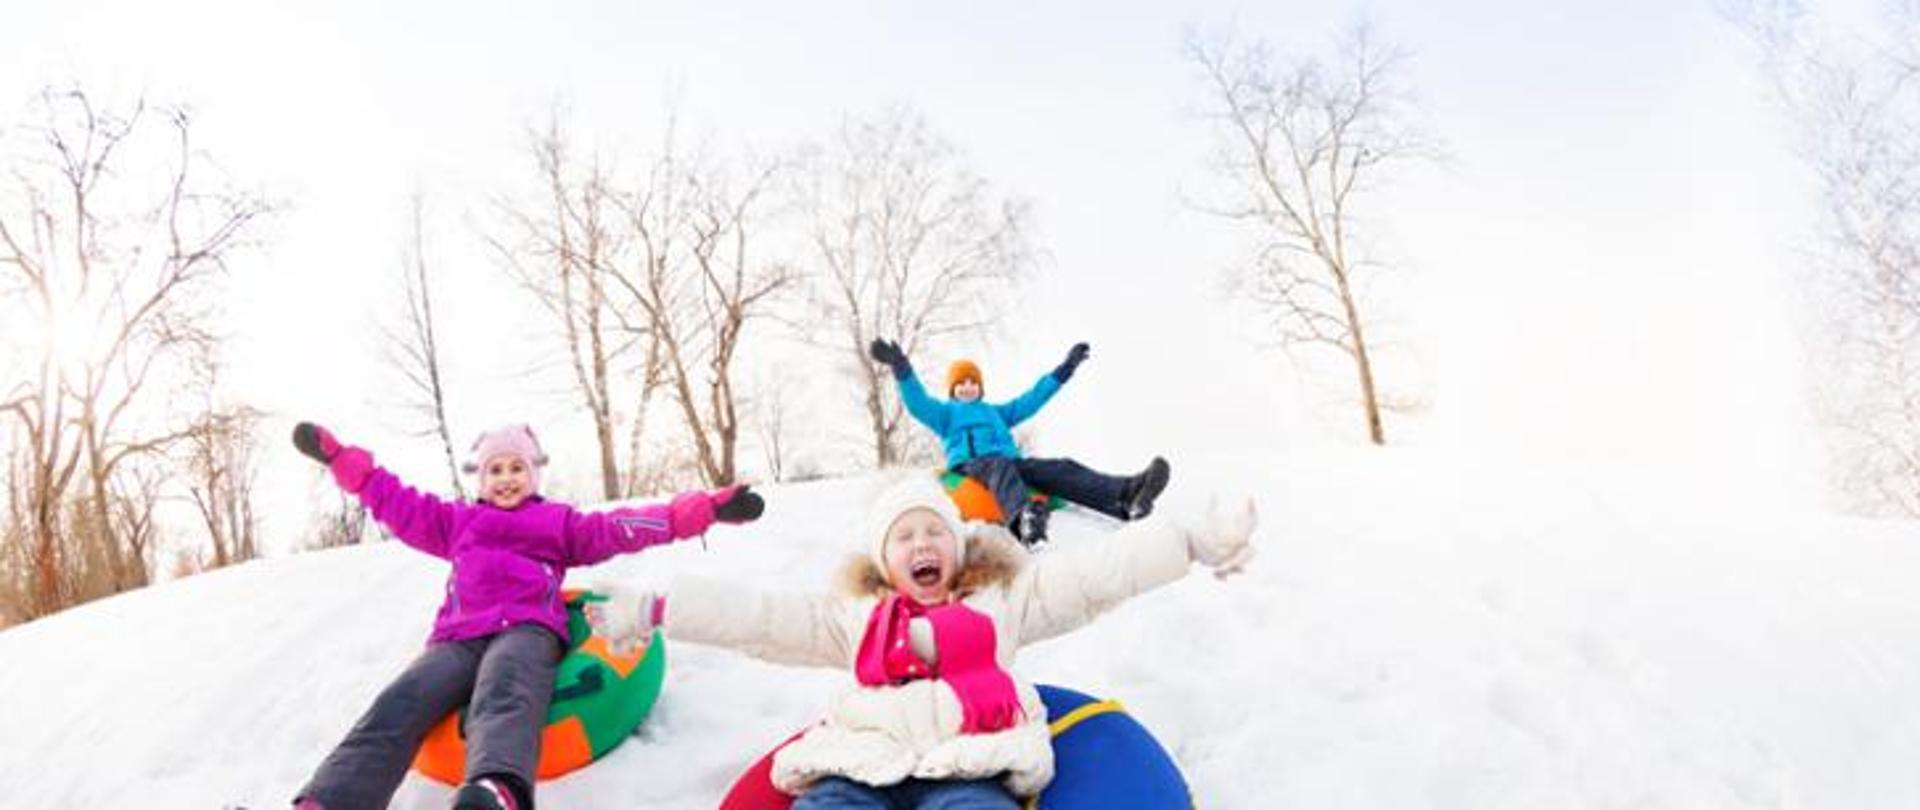 Podekscytowana grupa dzieci zjeżdżających razem na okrągłych ślizgach podczas pięknego zimowego dnia z pniami drzew w tle